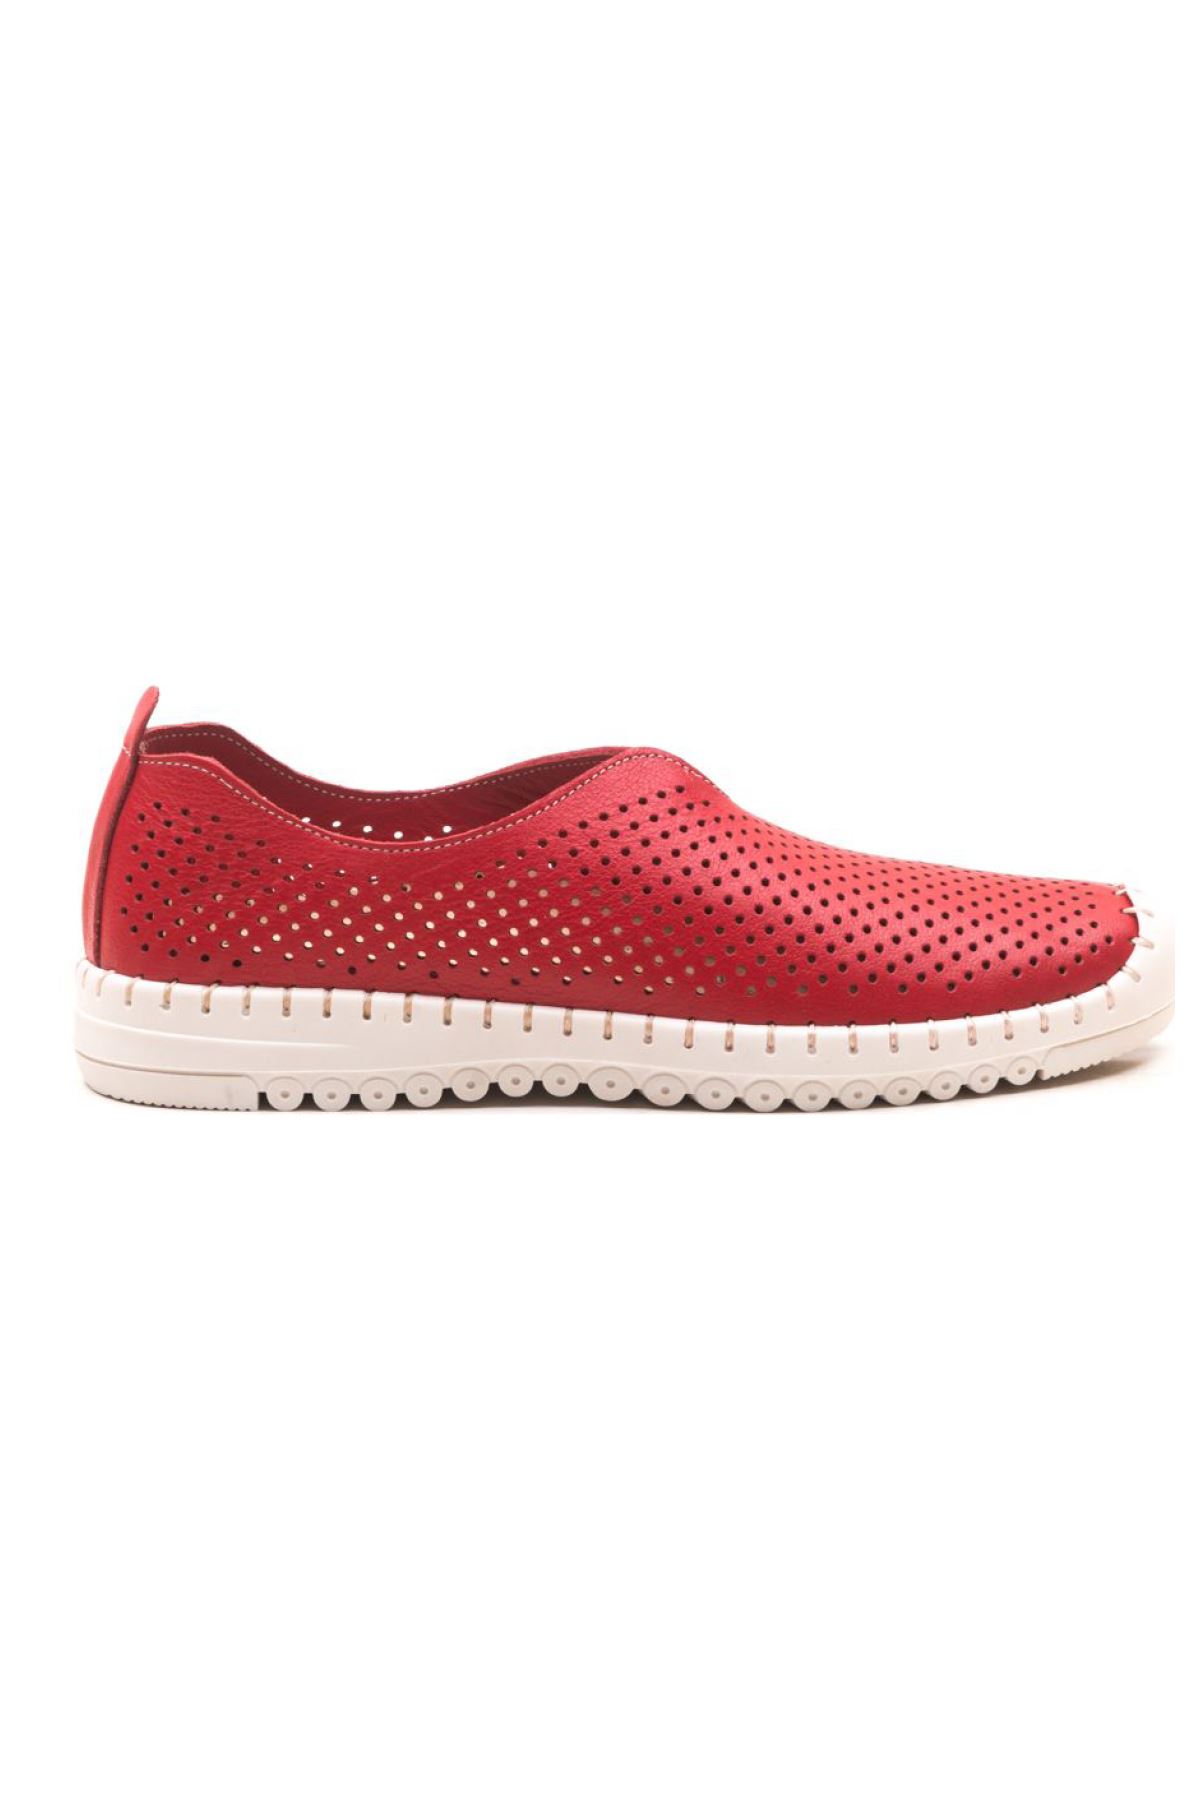 Hakiki Deri Kadın Deri Casual Ayakkabı Siena Gate Shoes-Kırmızı